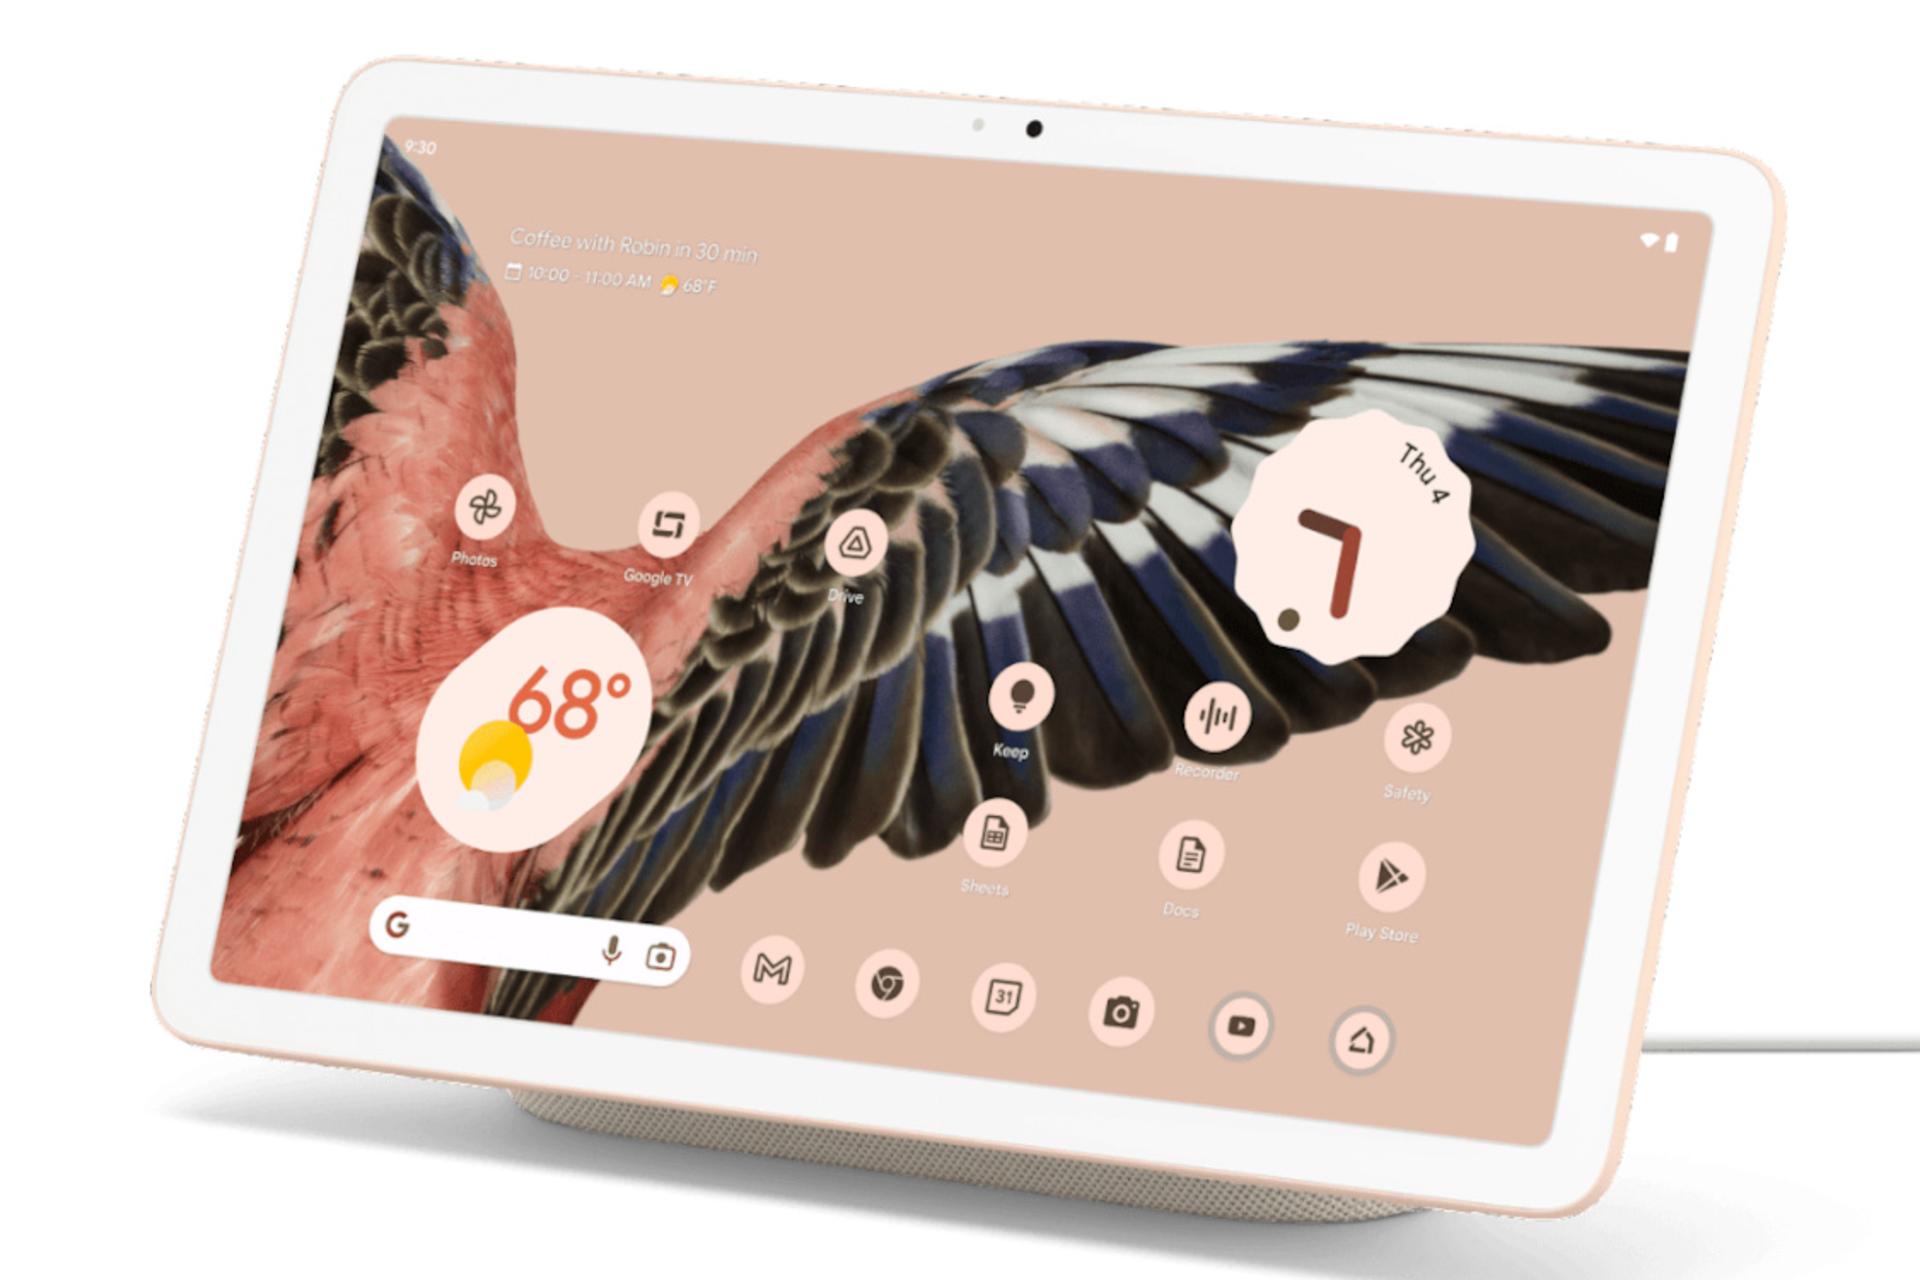 مرجع متخصصين ايران تبلت پيكسل گوگل / Google Pixel Tablet صورتي